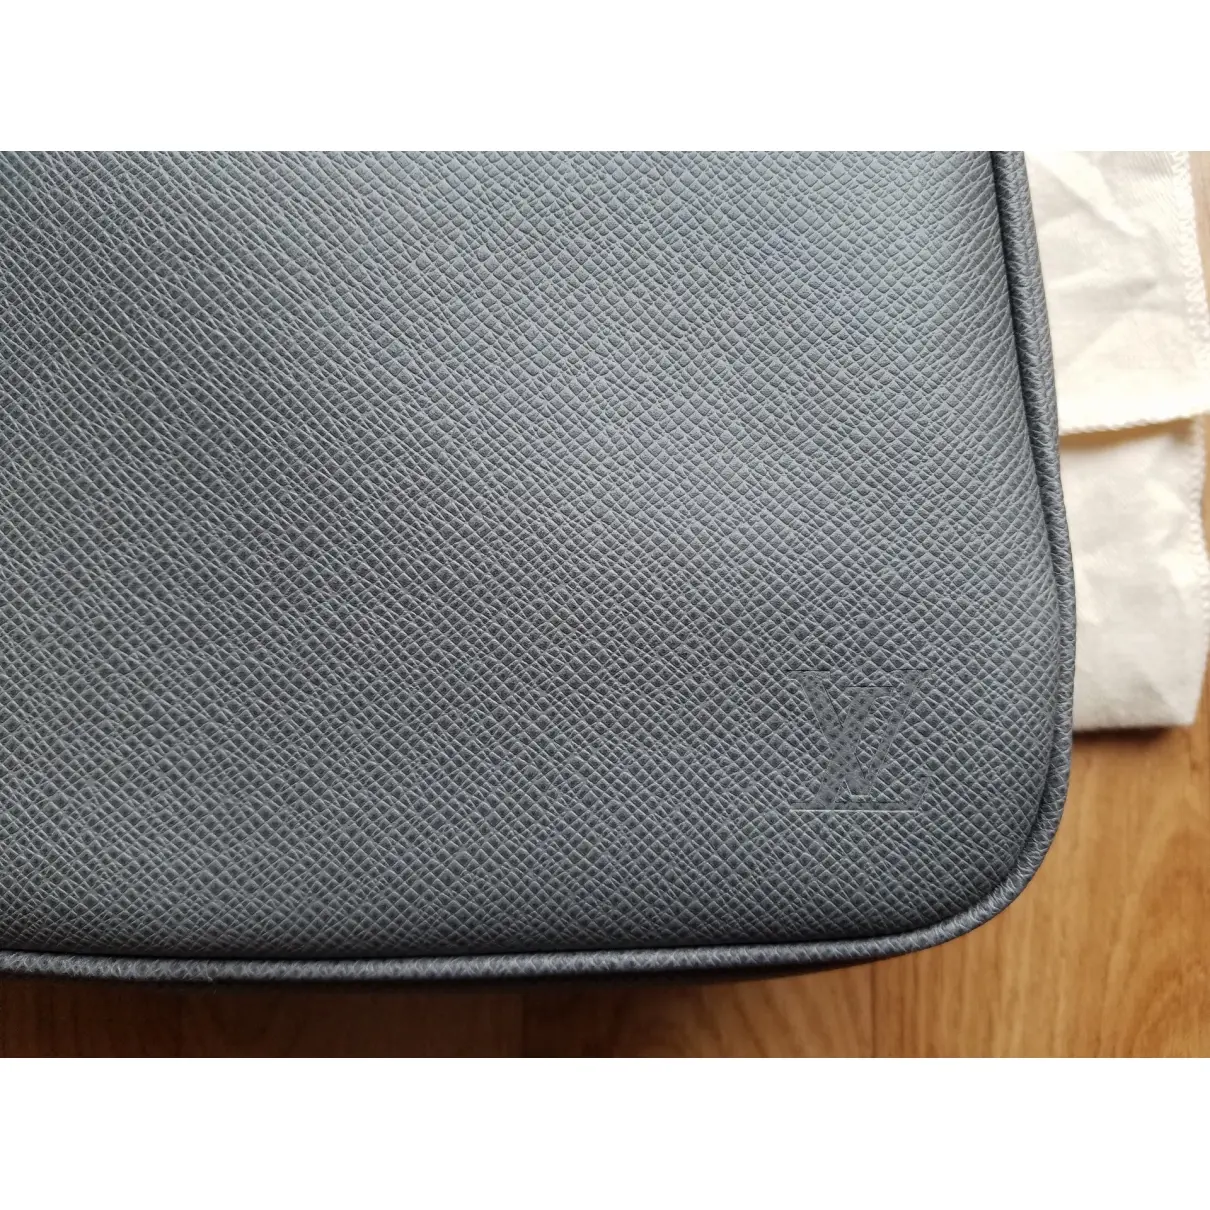 Trousse de toilette  leather small bag Louis Vuitton